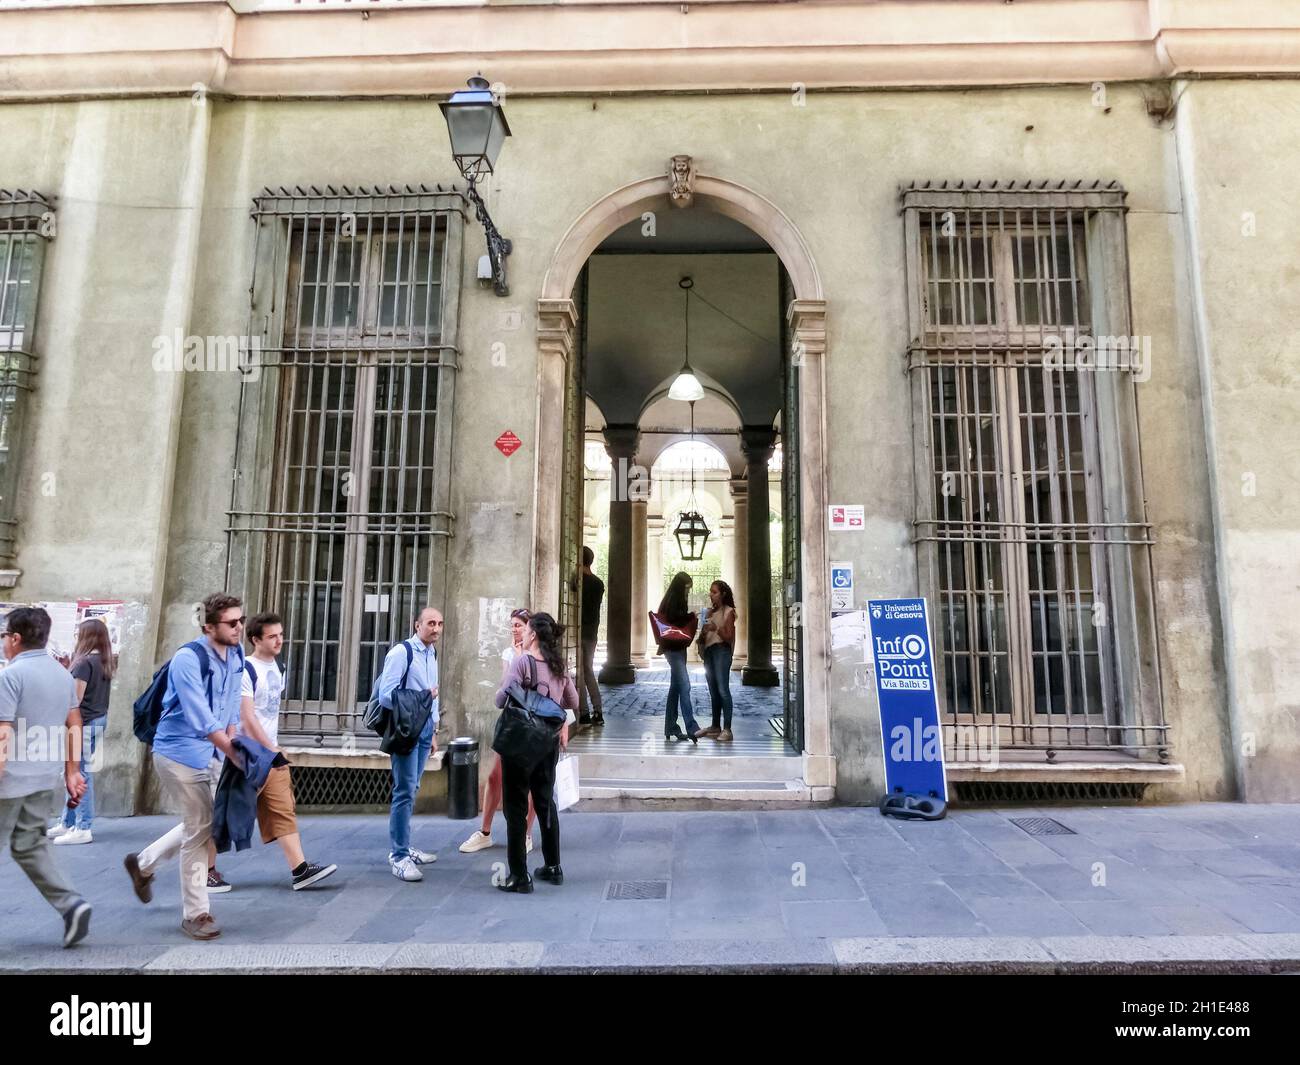 GÊNES, ITALIE - 11 septembre 2019: Les gens près de la bibliothèque de l'Université est situé sur la via Balbi, il y a toujours beaucoup d'étudiants là Banque D'Images